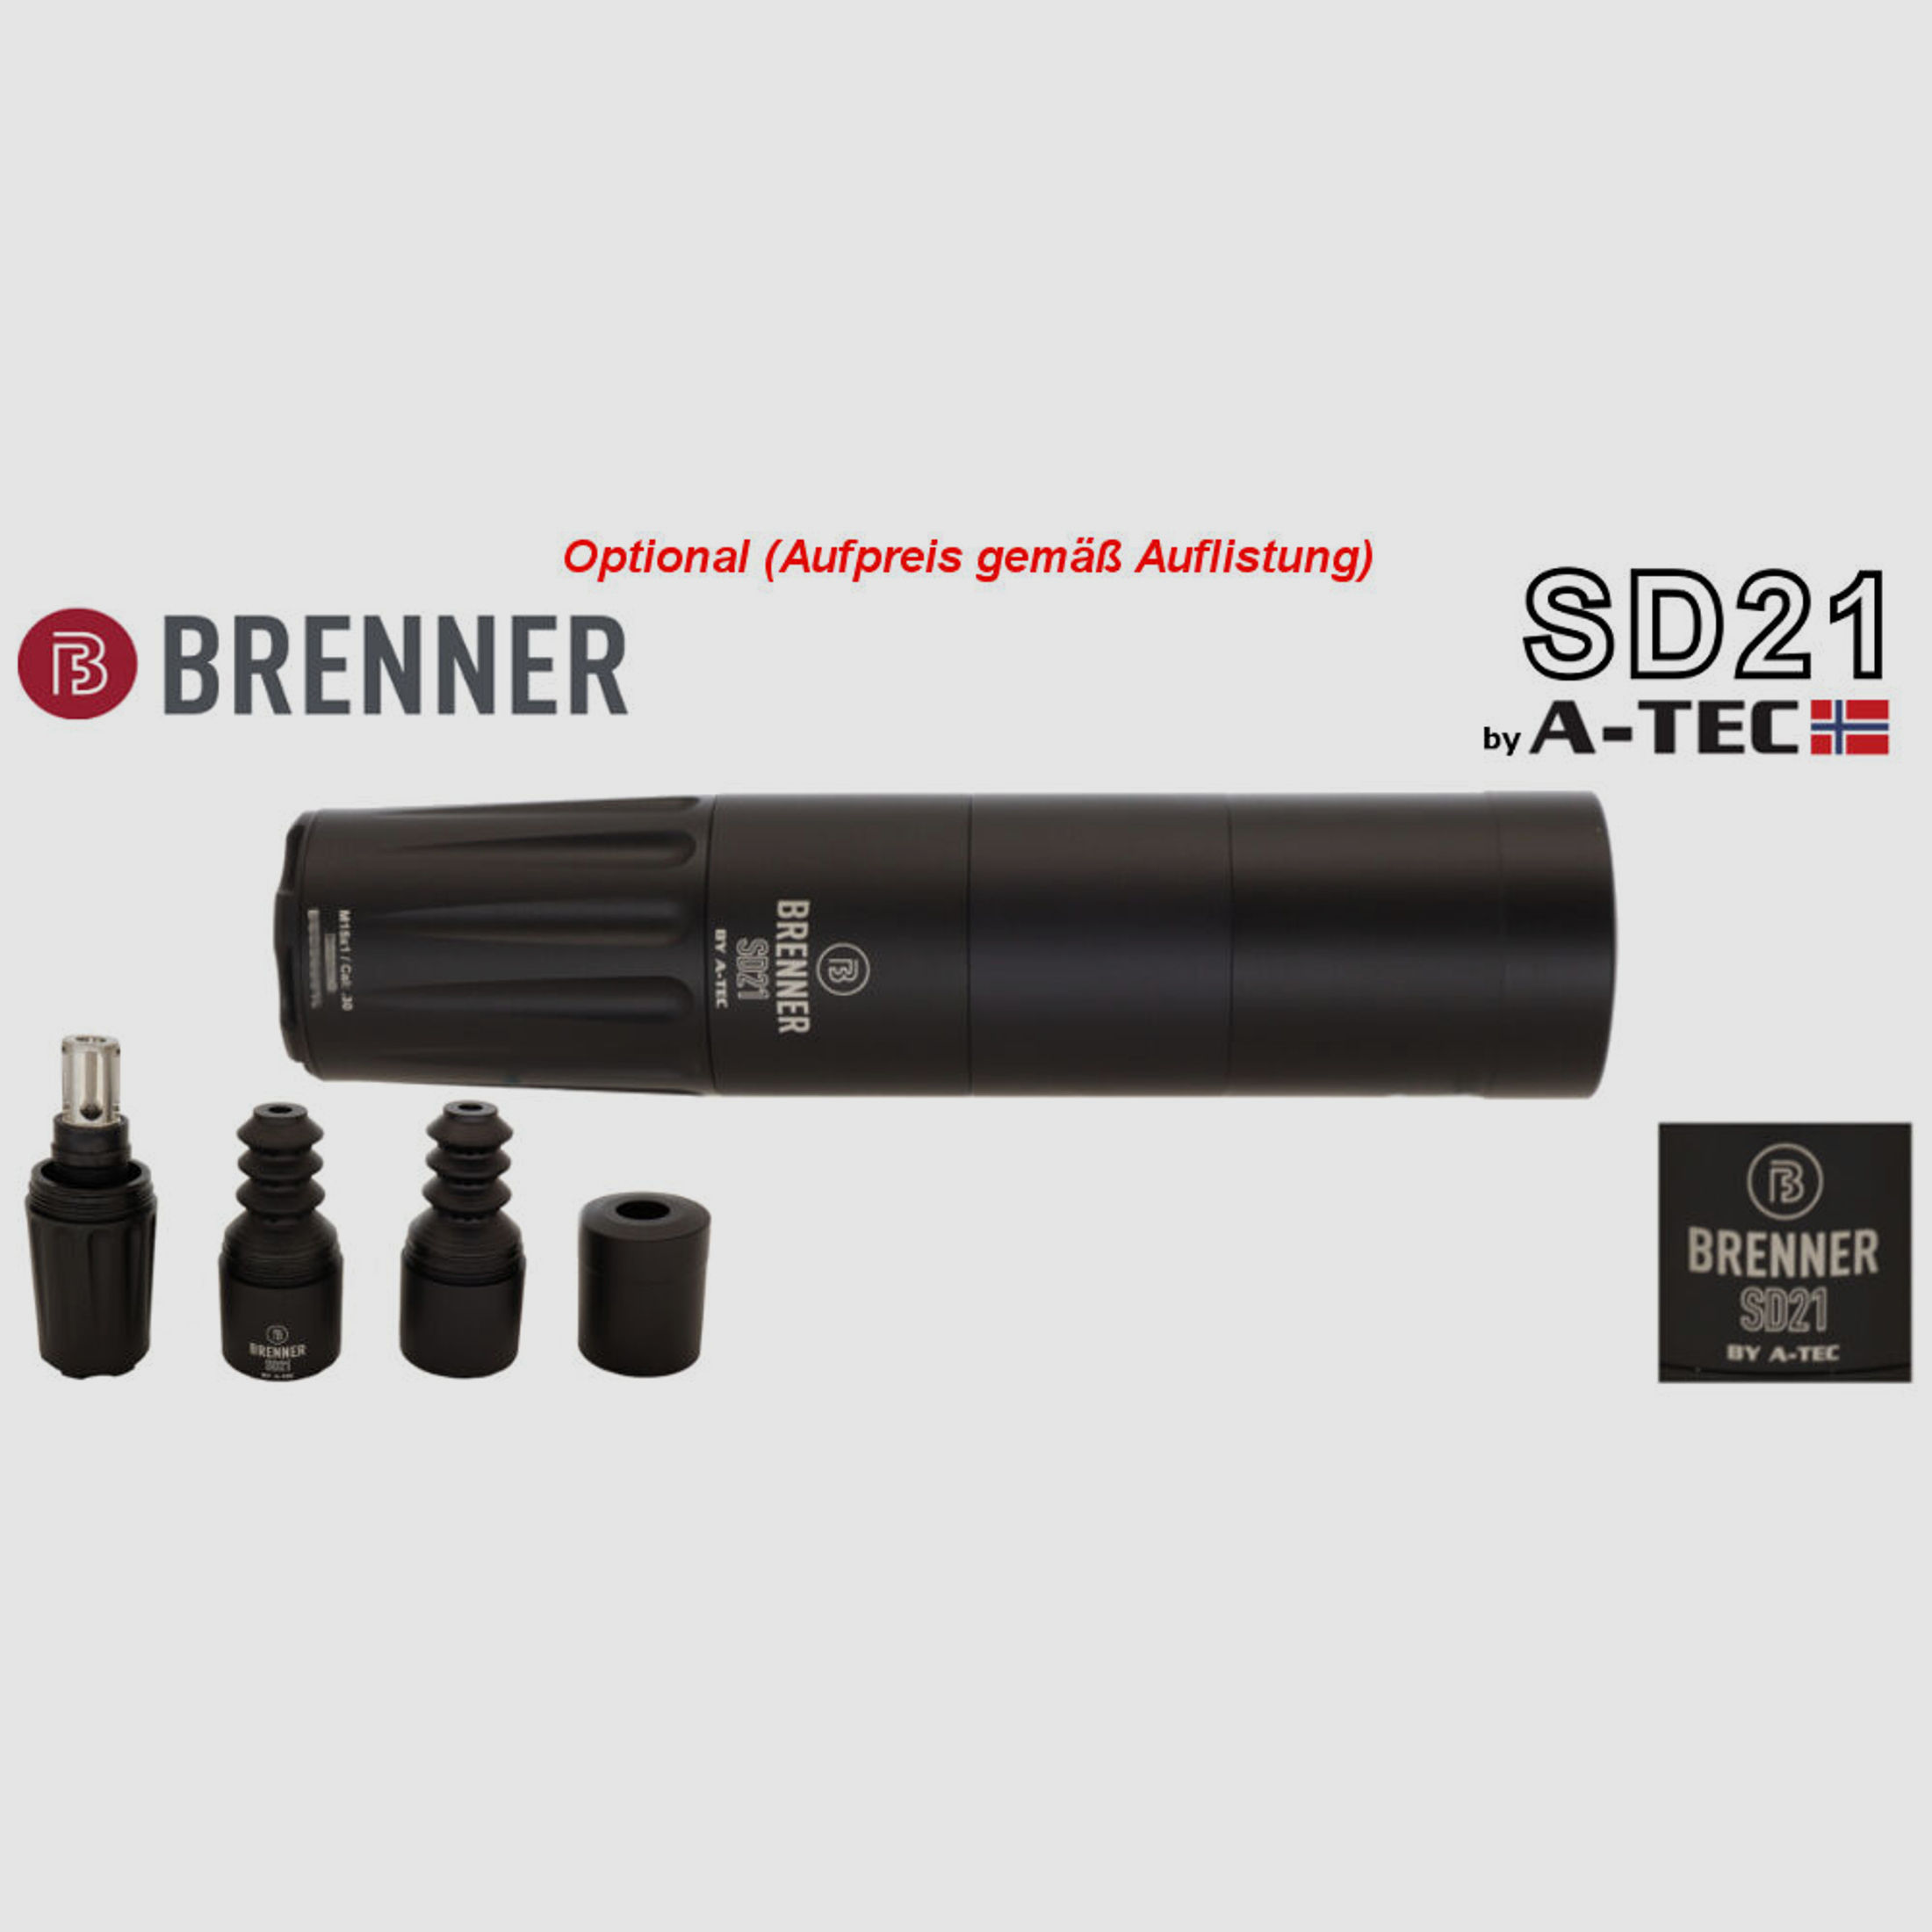 Bergara	 B14 B&H Prohunter Flex LINKS Lochschaft ZF Endurance 3-12x56 fertig montiert / Optional: Brenner Schalldämpfer